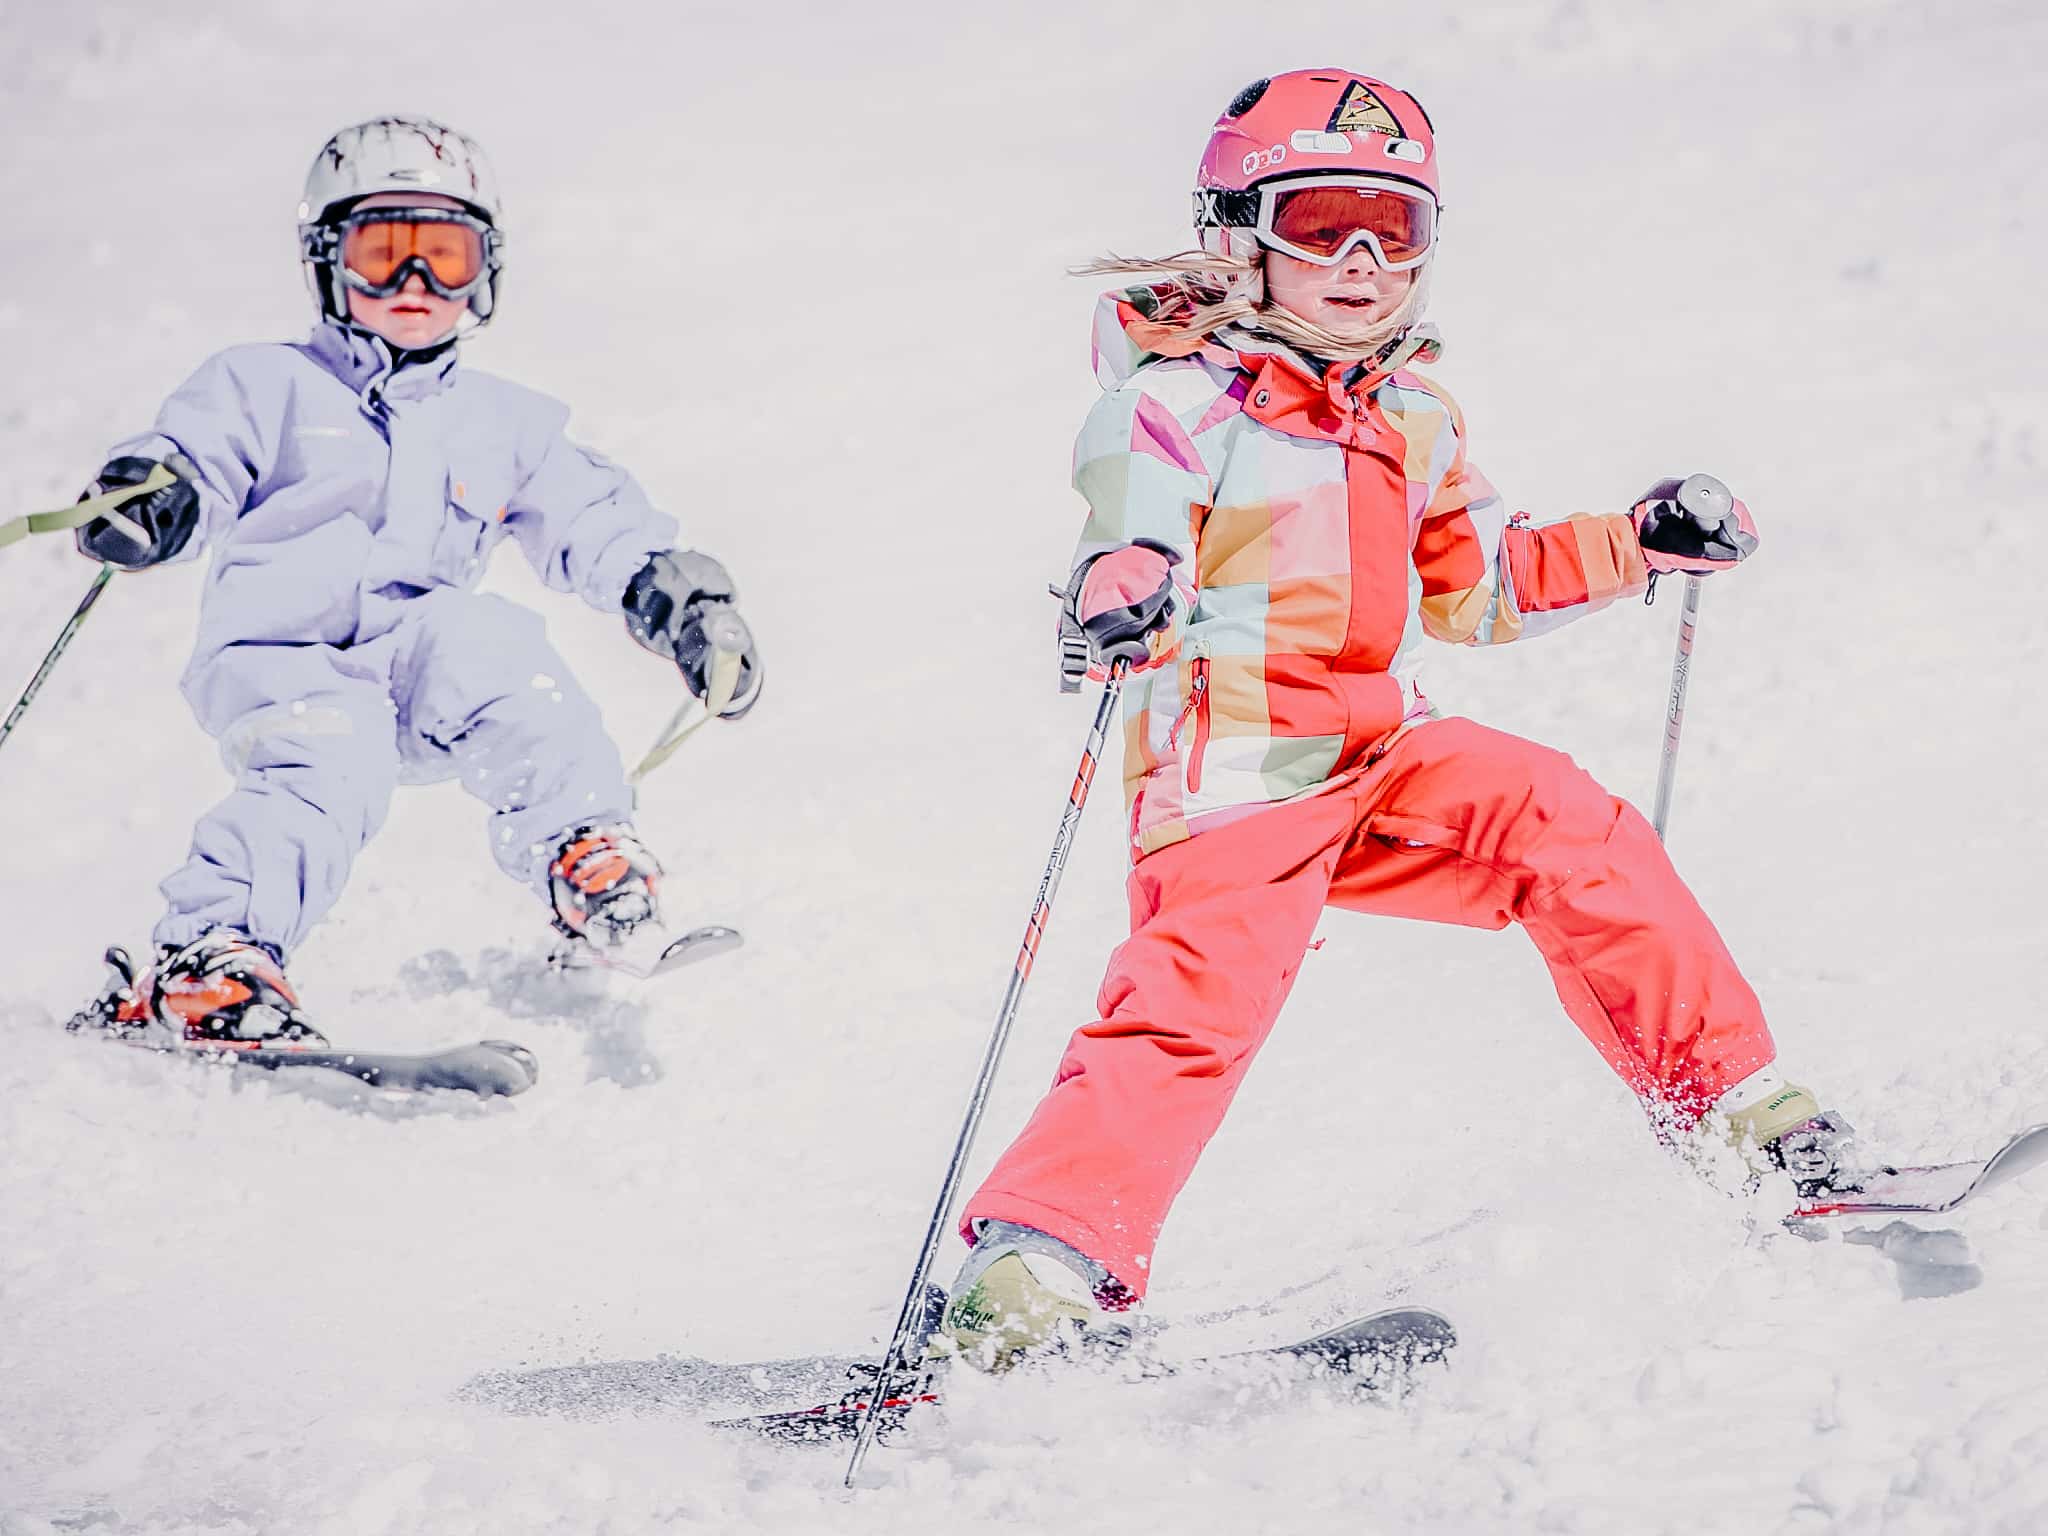 Kinder beim Ski fahren